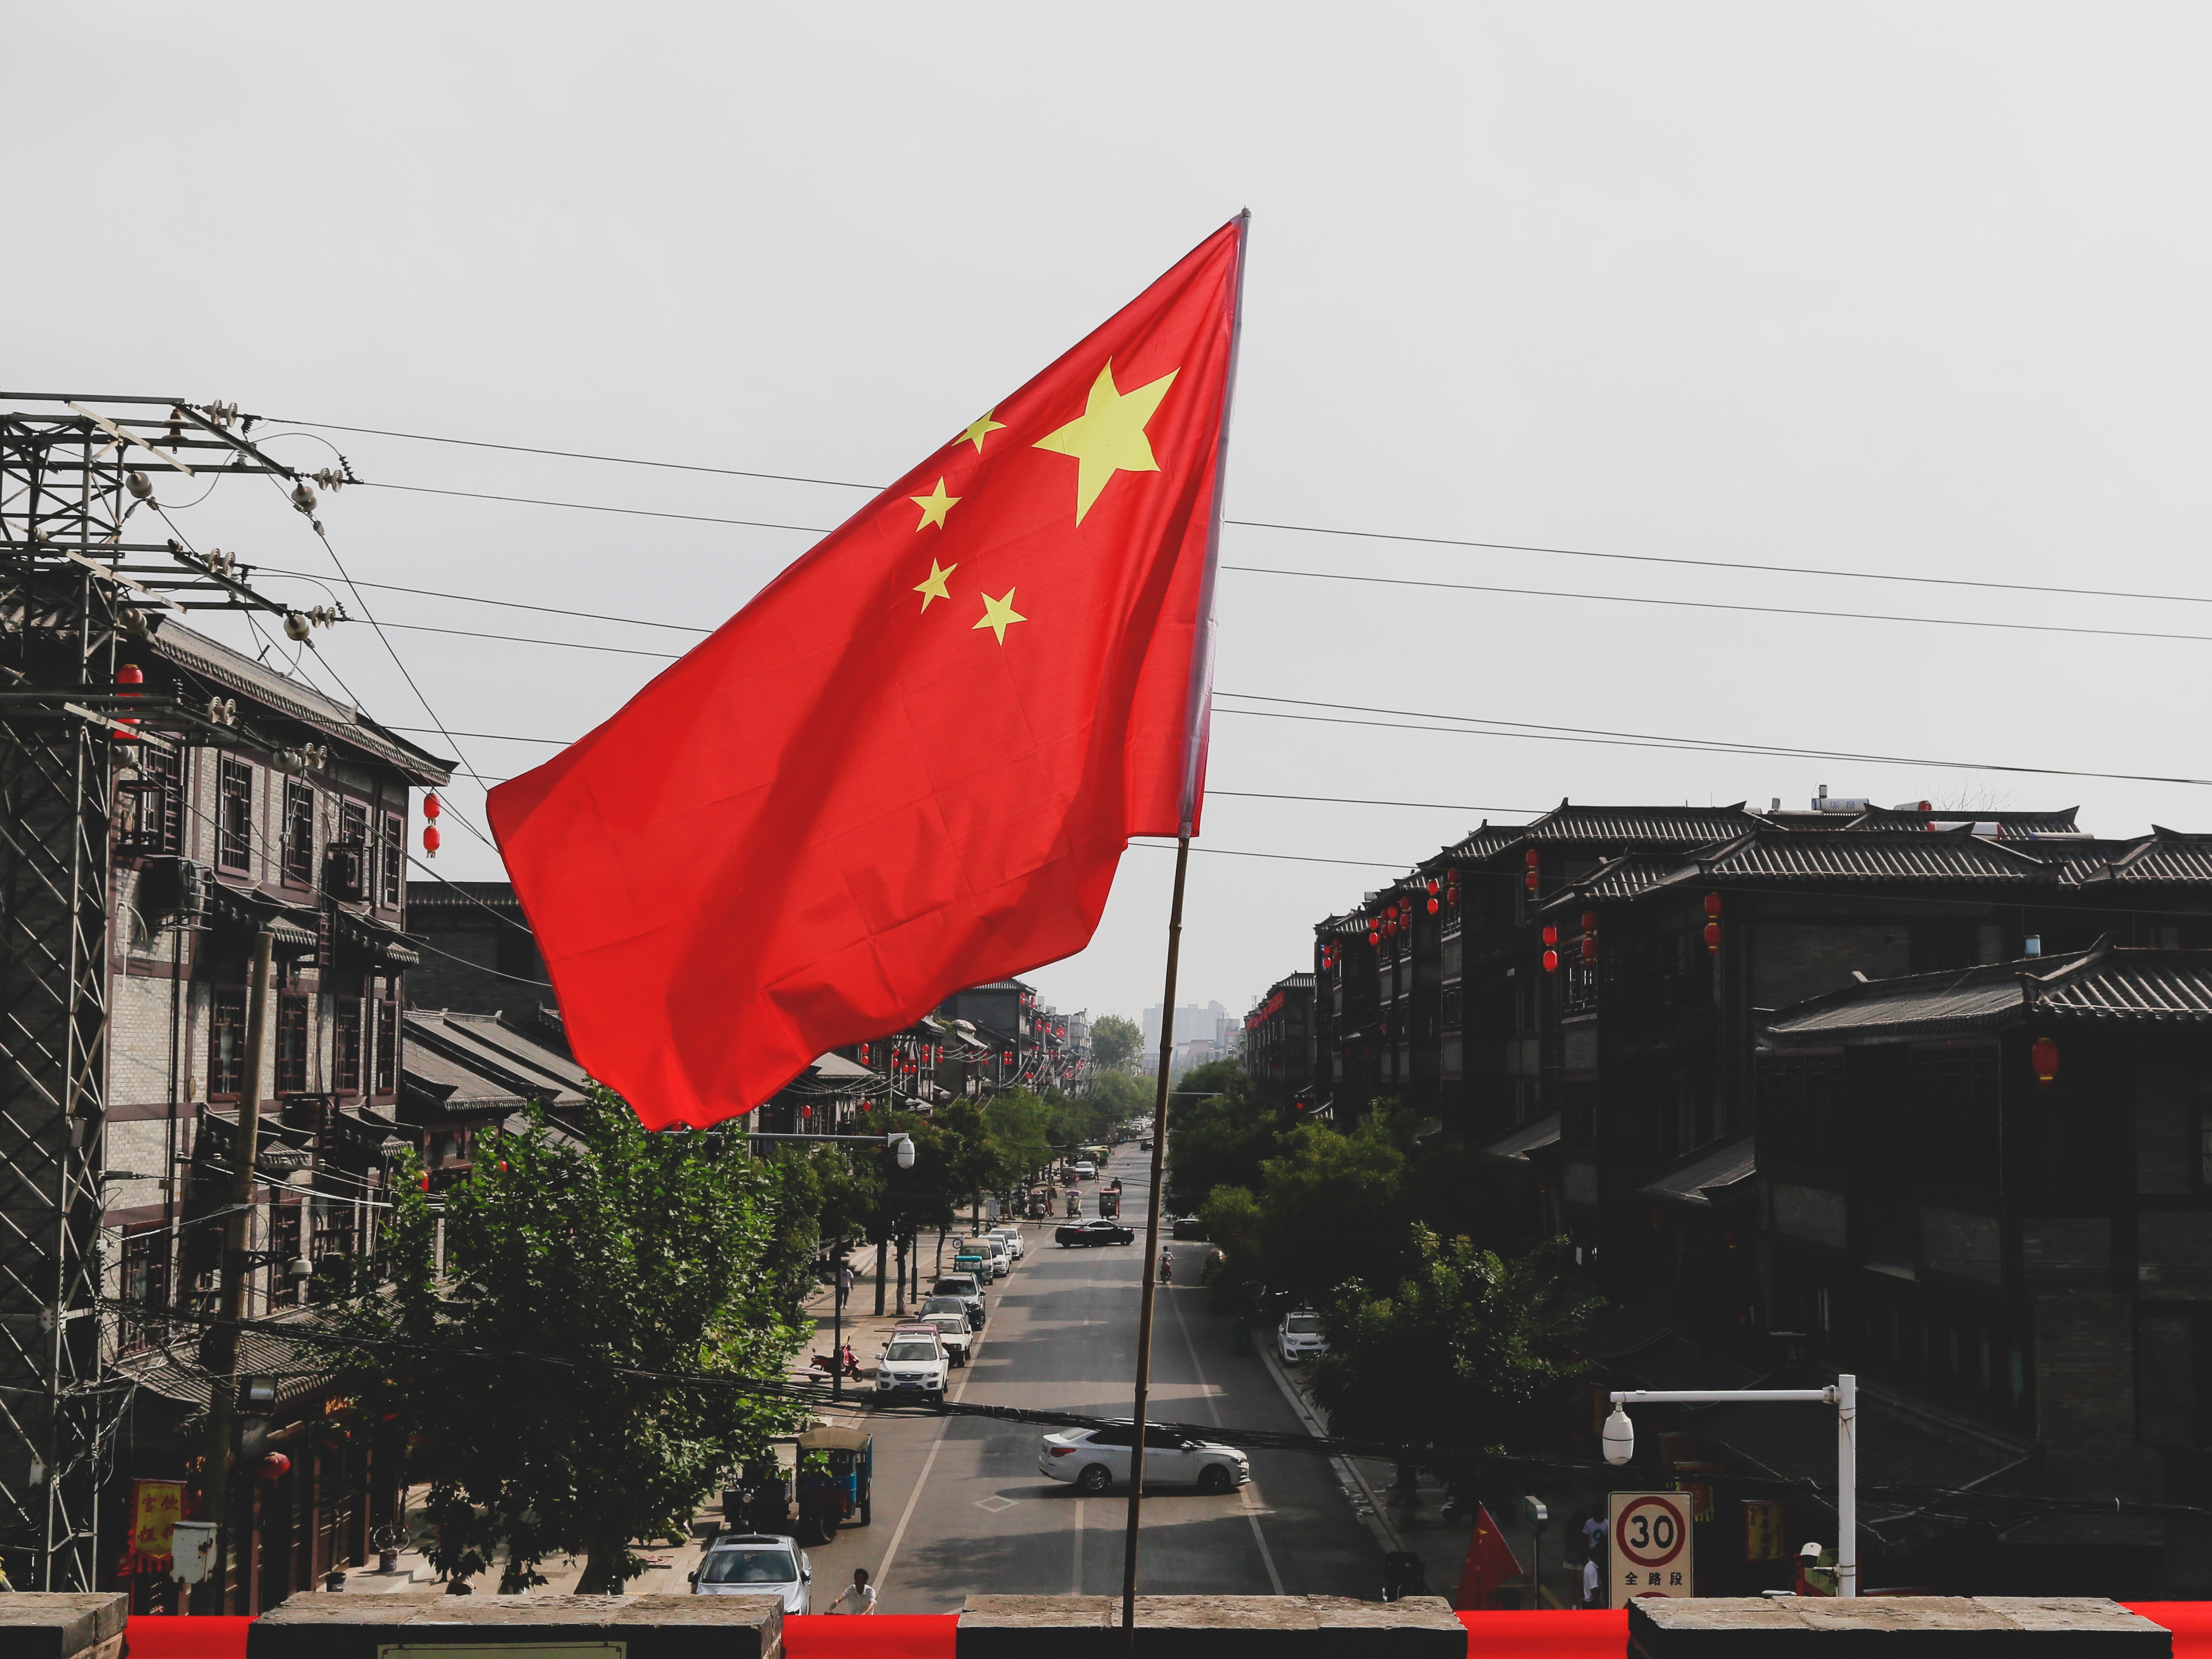 “1元退市”笼罩中国！上海、深圳22家公司面临退市危机 近20%房企崩跌触及“红线”